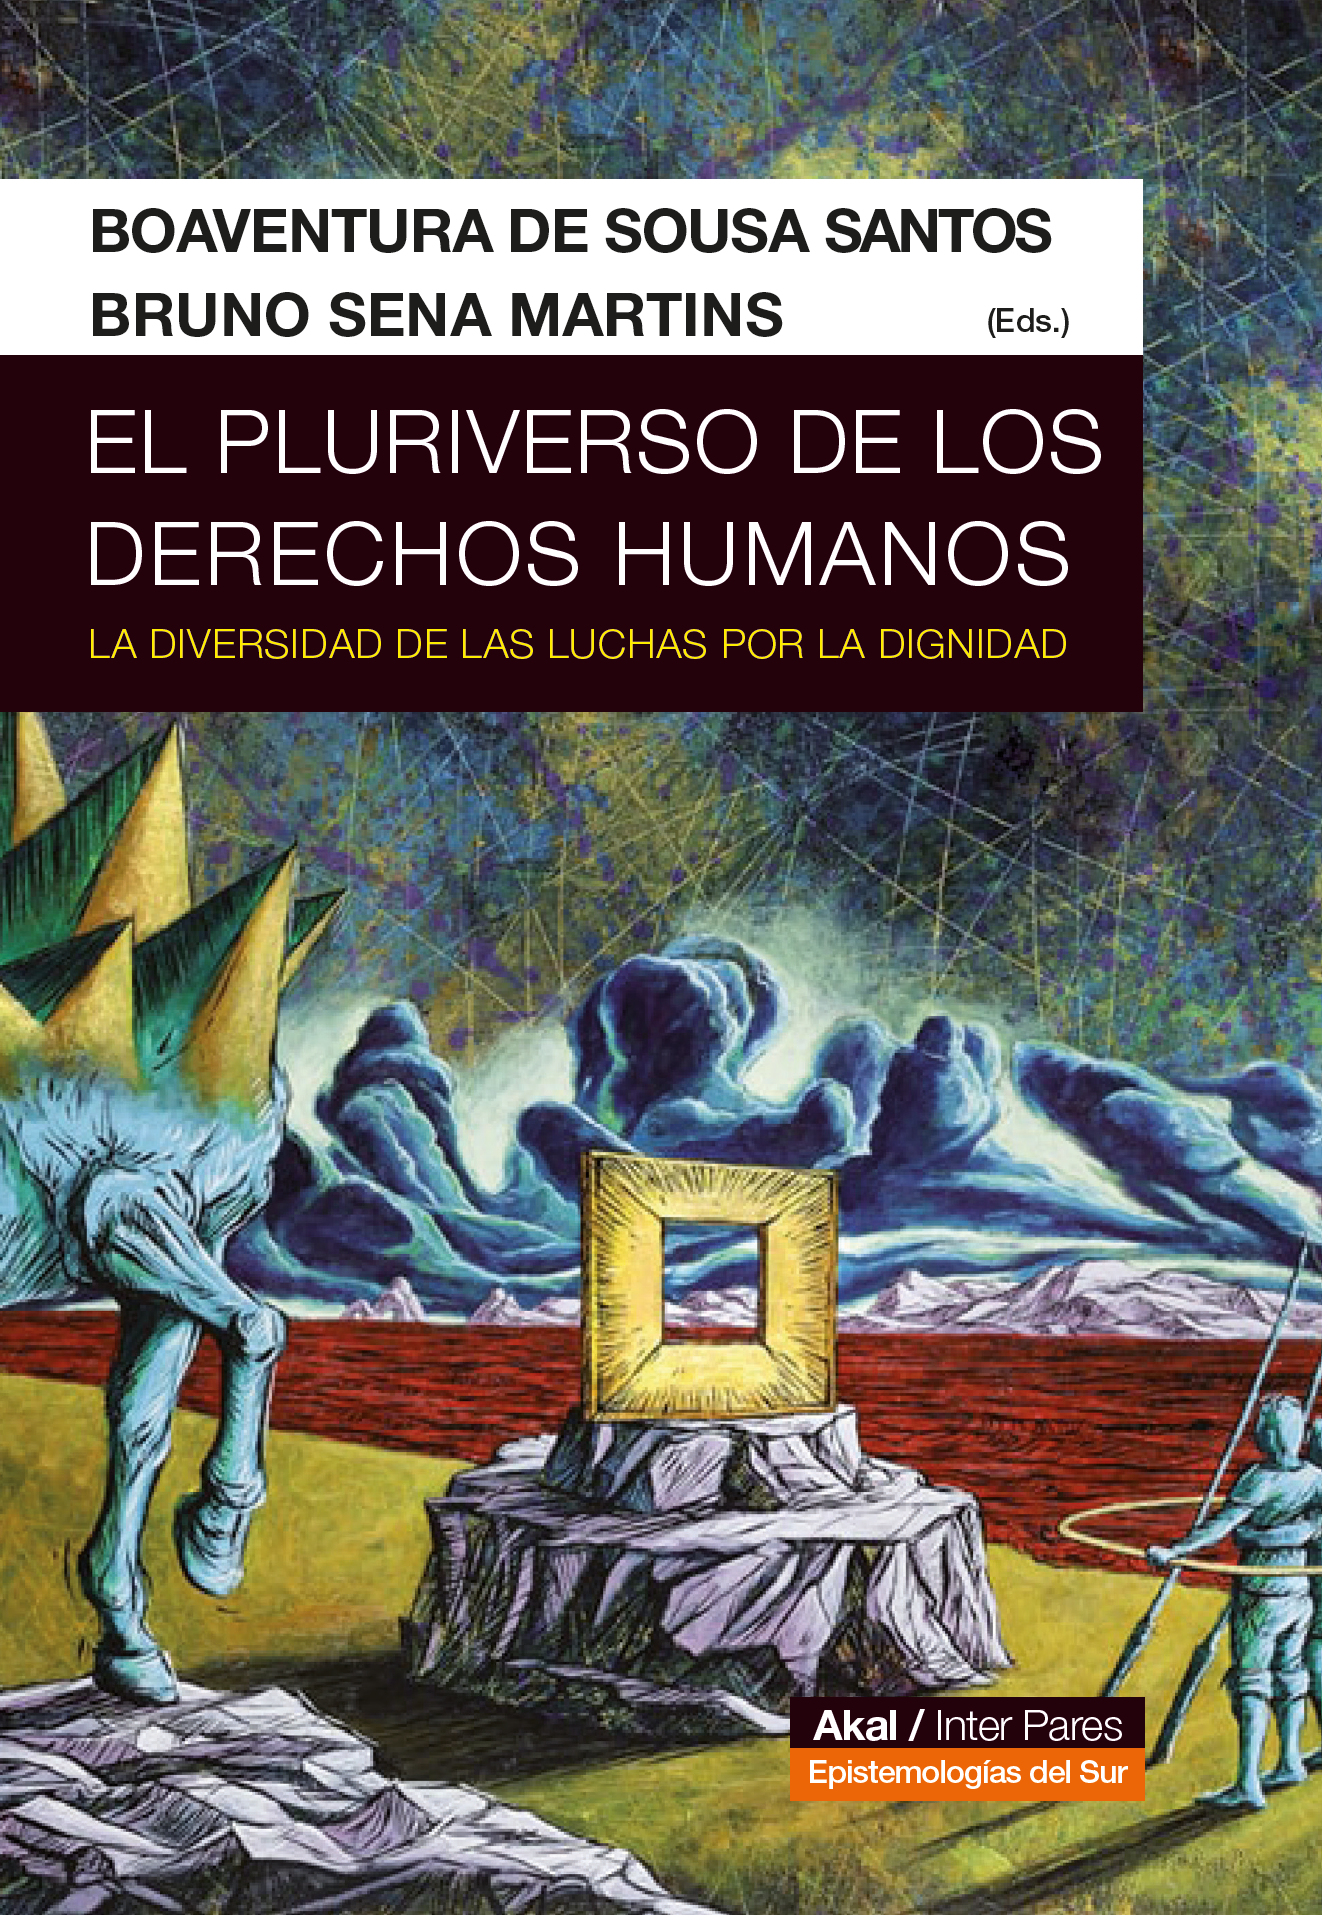 El pluriverso de los derechos humanos - Boaventura de Sousa Santos y Bruno Sena Martins (eds.)